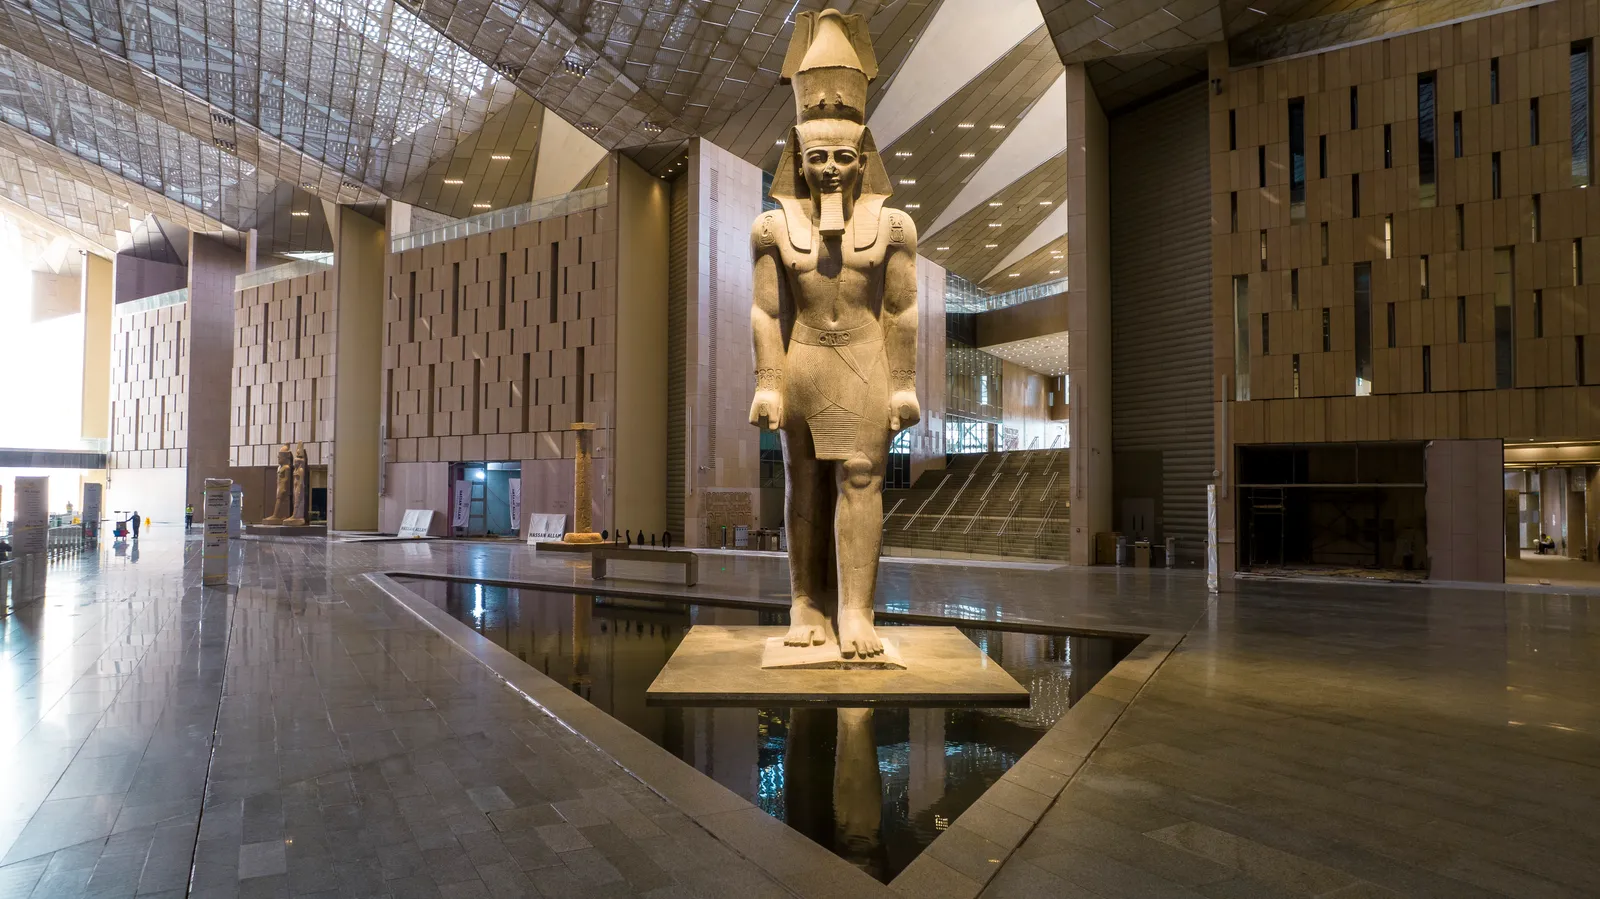 Ngôi nhà mới của Tutankhamun Là một trong những vị Pharaoh quan trọng nhất của Vương triều thứ mười tám của Ai Cập cổ đại – nhờ khối tài sản dồi dào và tài liệu được phát hiện trong ngôi mộ gần như nguyên vẹn của ông vào năm 1922 – Tutankhamen về bản chất có mối liên hệ với cách thế giới nhìn nhận lịch sử Ai Cập. Giờ đây, toàn bộ kho báu của anh ta sẽ được tiết lộ cho thế giới. Từ những đồ vật được định sẵn để dọn đường cho ông ở thế giới bên kia, đến quần áo, đồ trang sức và xe ngựa được sử dụng trong suốt cuộc đời của ông, tất cả 5.000 đồ vật từ lăng mộ của ông sẽ được trưng bày lần đầu tiên tại hai phòng bảo tàng khổng lồ. Nhìn chung, Bảo tàng Grand Ai Cập sẽ trưng bày hơn 100.000 hiện vật.  Vậy khi nào Bảo tàng Grand Ai Cập sẽ mở cửa?